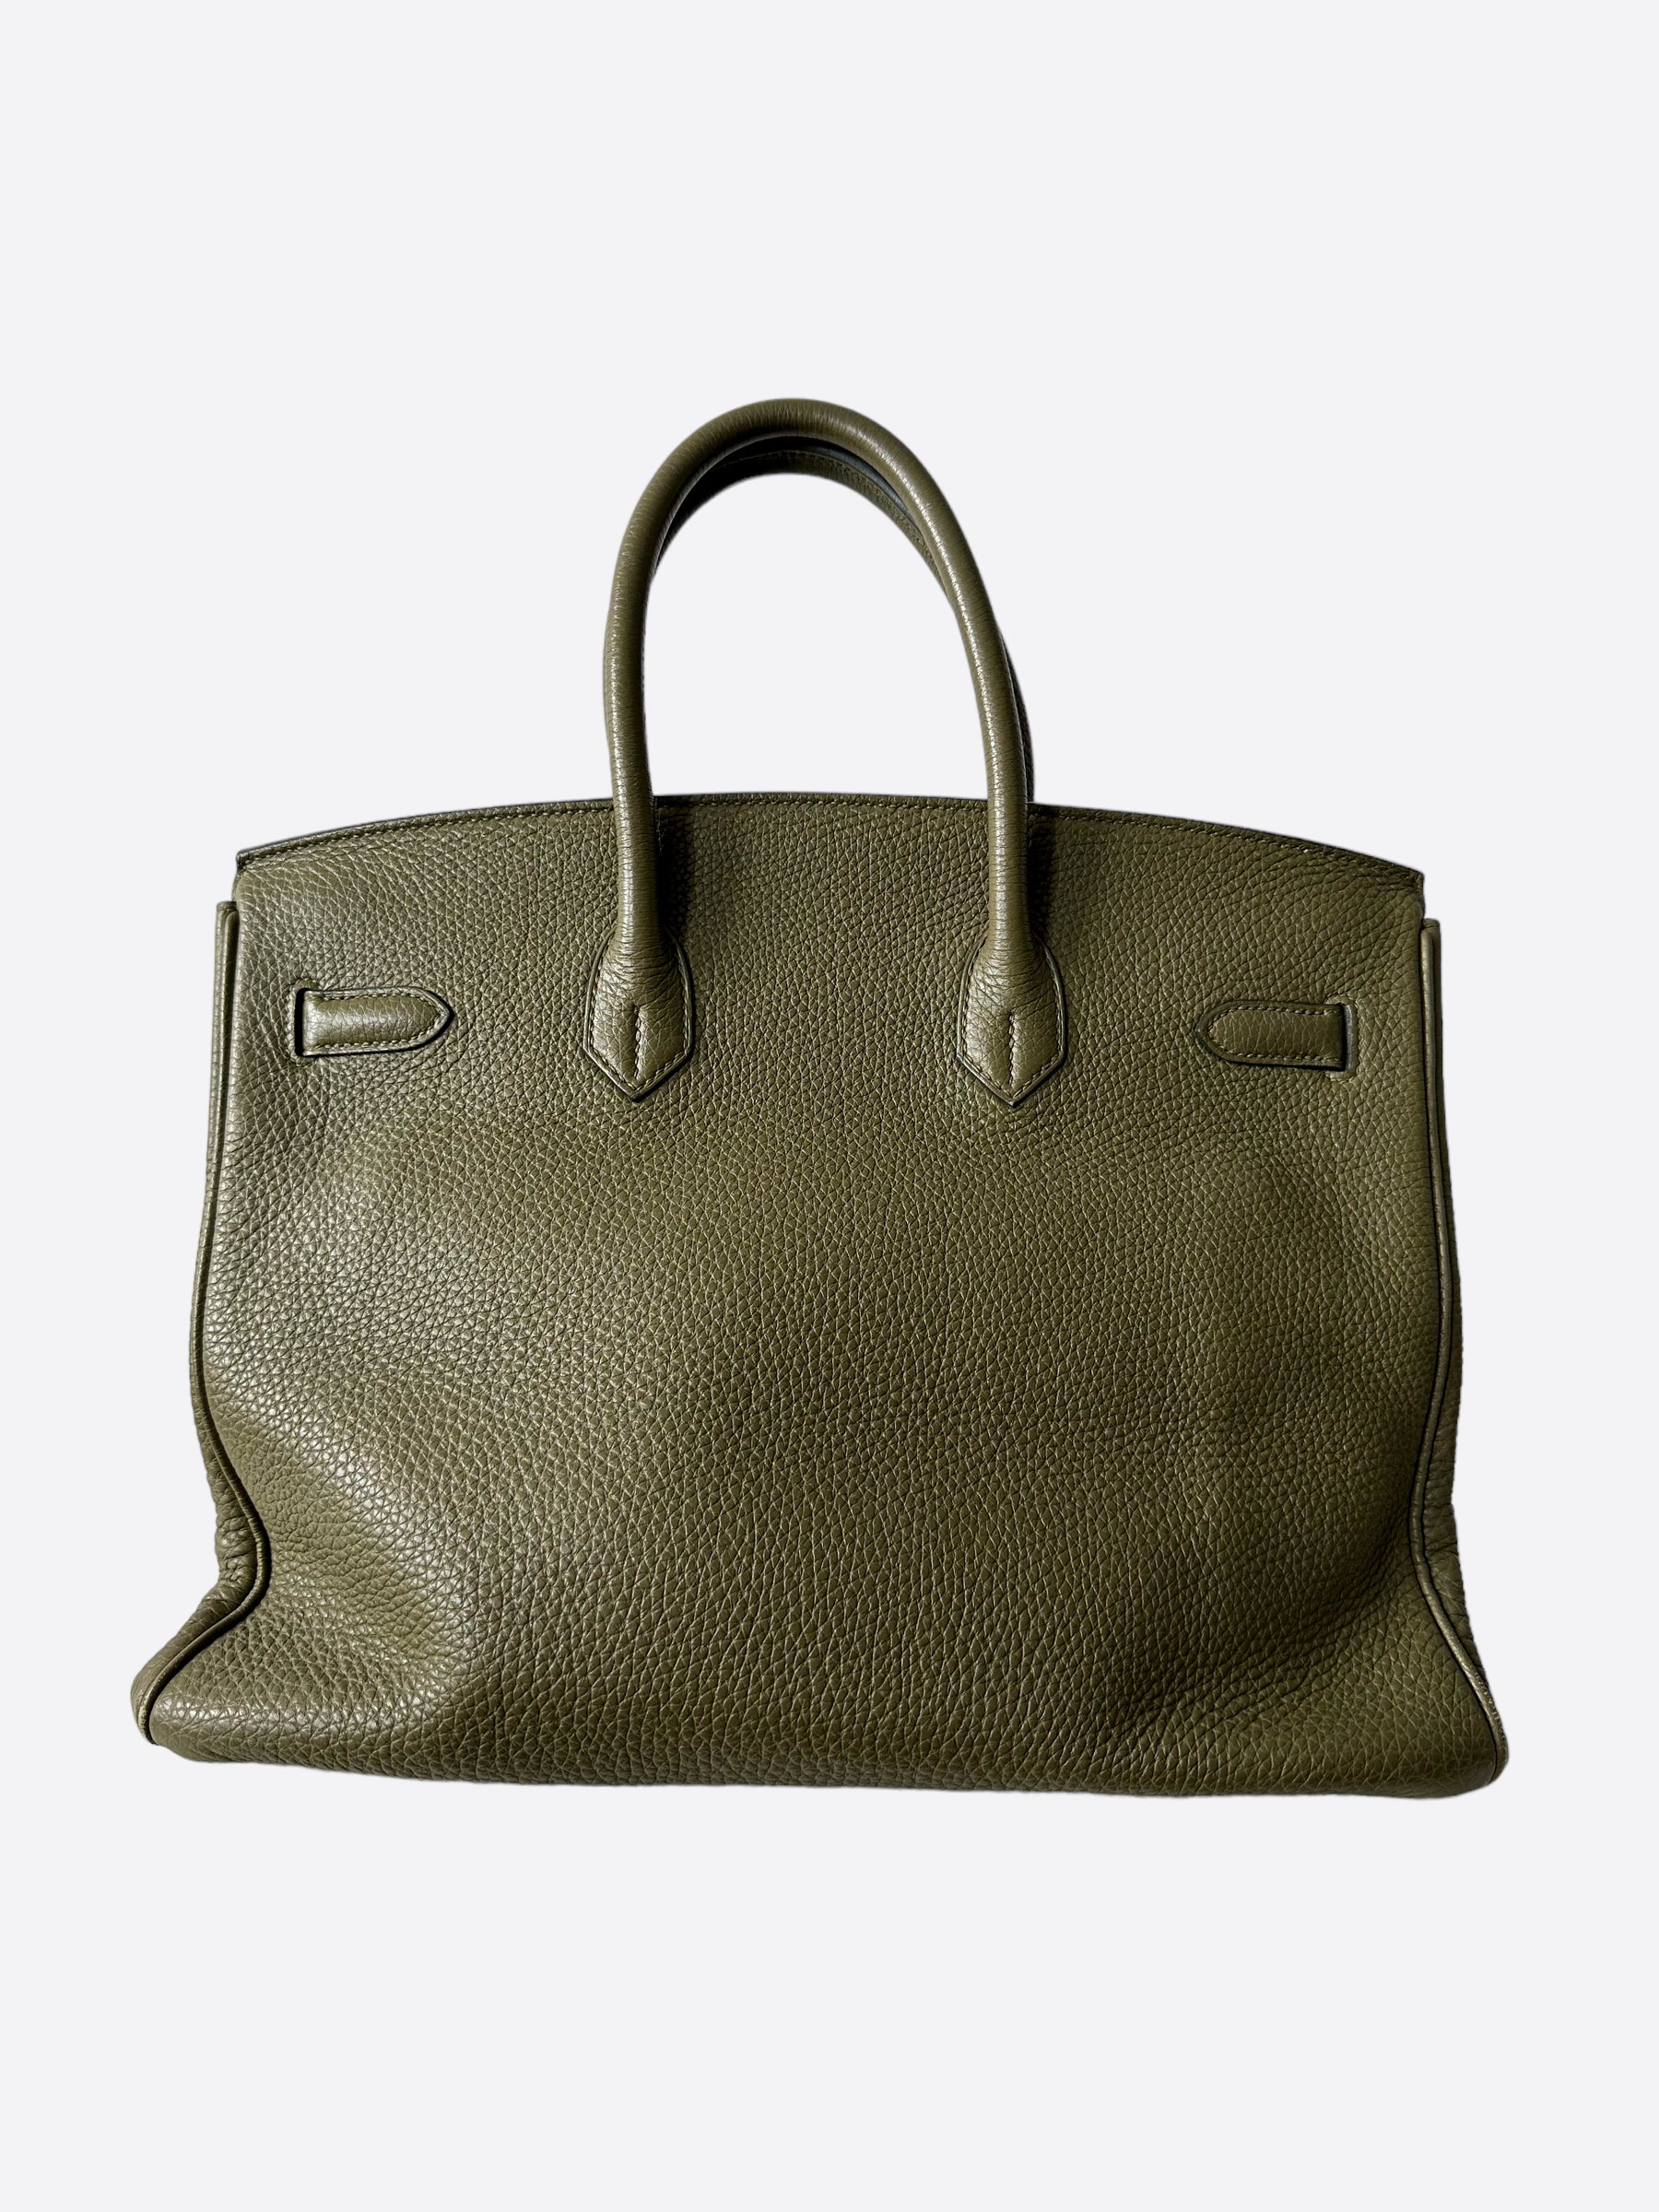 Hermes Birkin bag 35 Olive green Togo leather Silver hardware